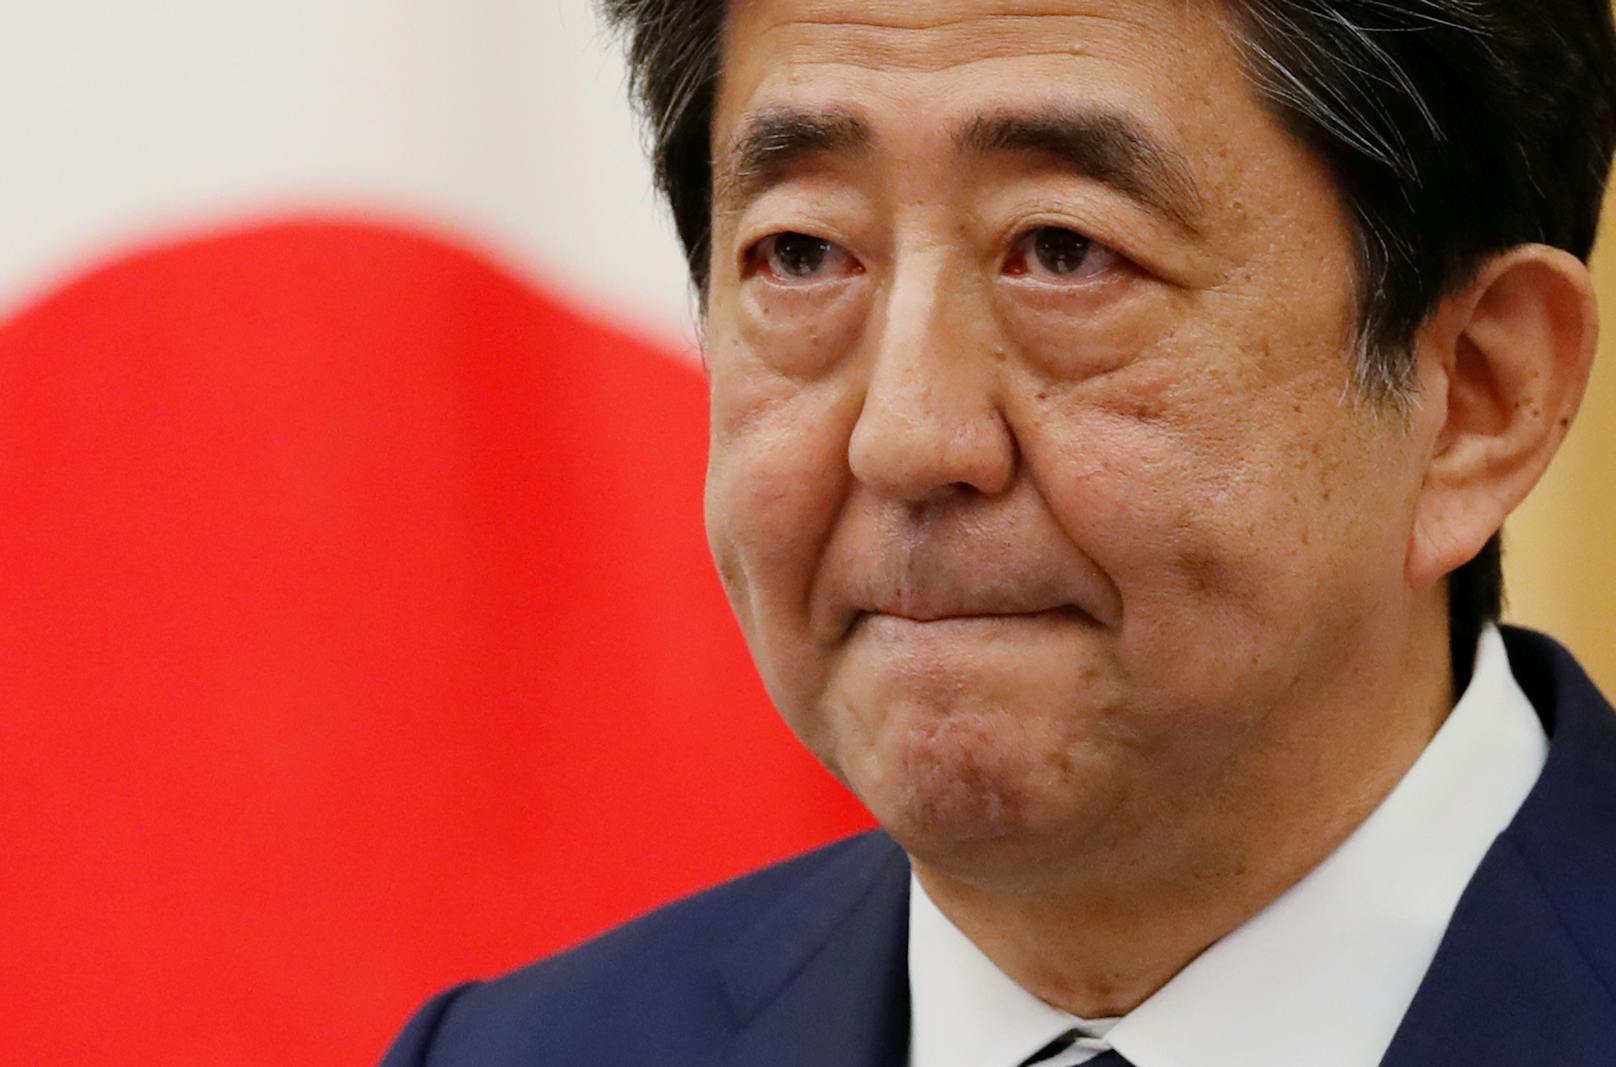 Auf den früheren Regierungschef Japans Shinzo Abe ist offenbar ein Anschlag verübt worden.